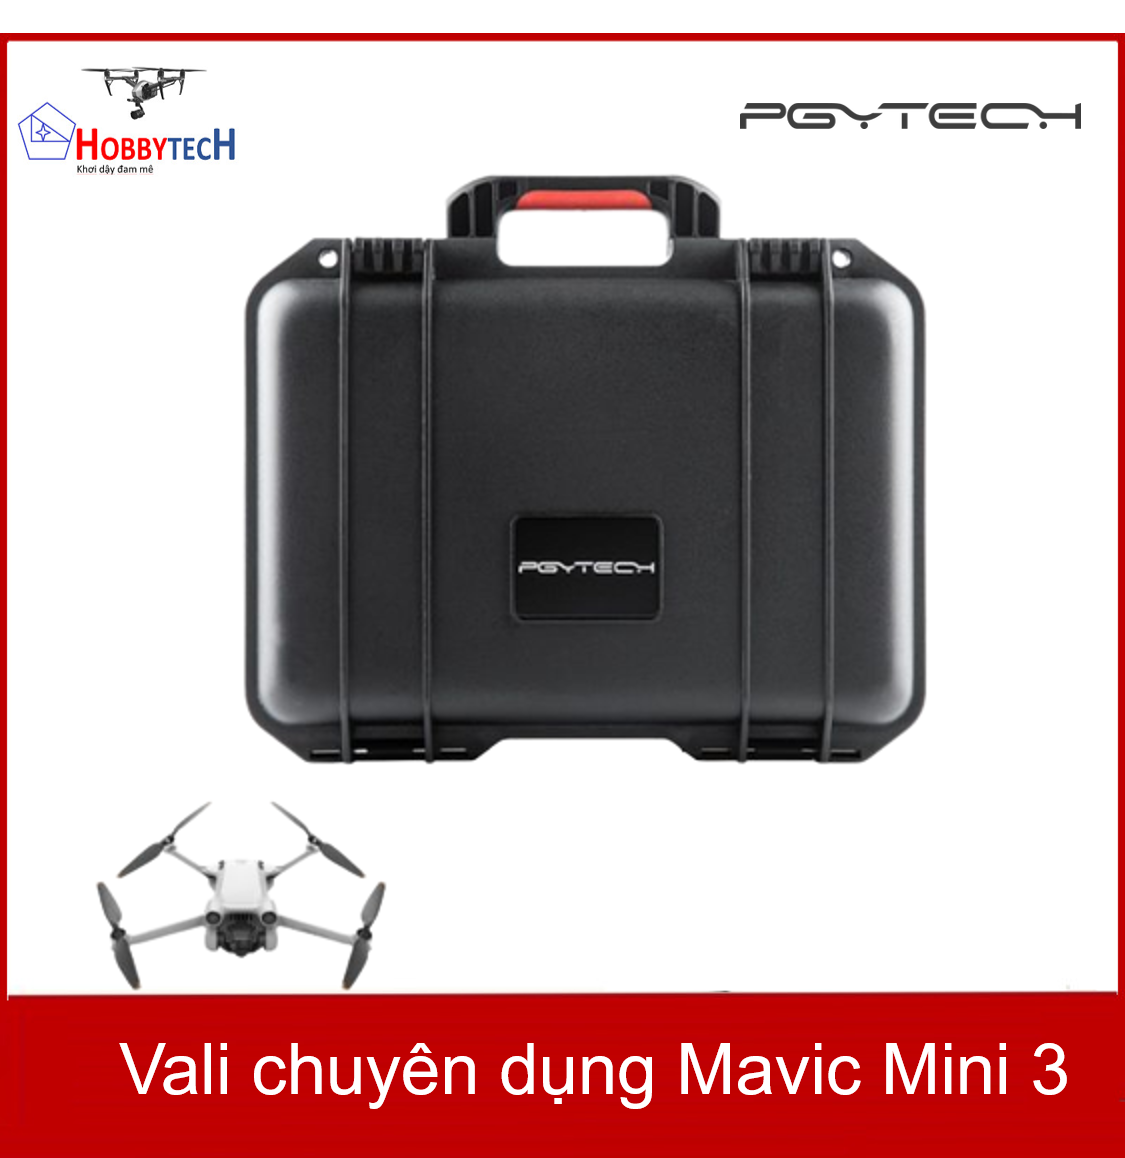 Vali chống sốc chuyên dụng Mavic Mini 3 – DJI MINI 3 PRO SAFETY CARRYING CASE PGYtech